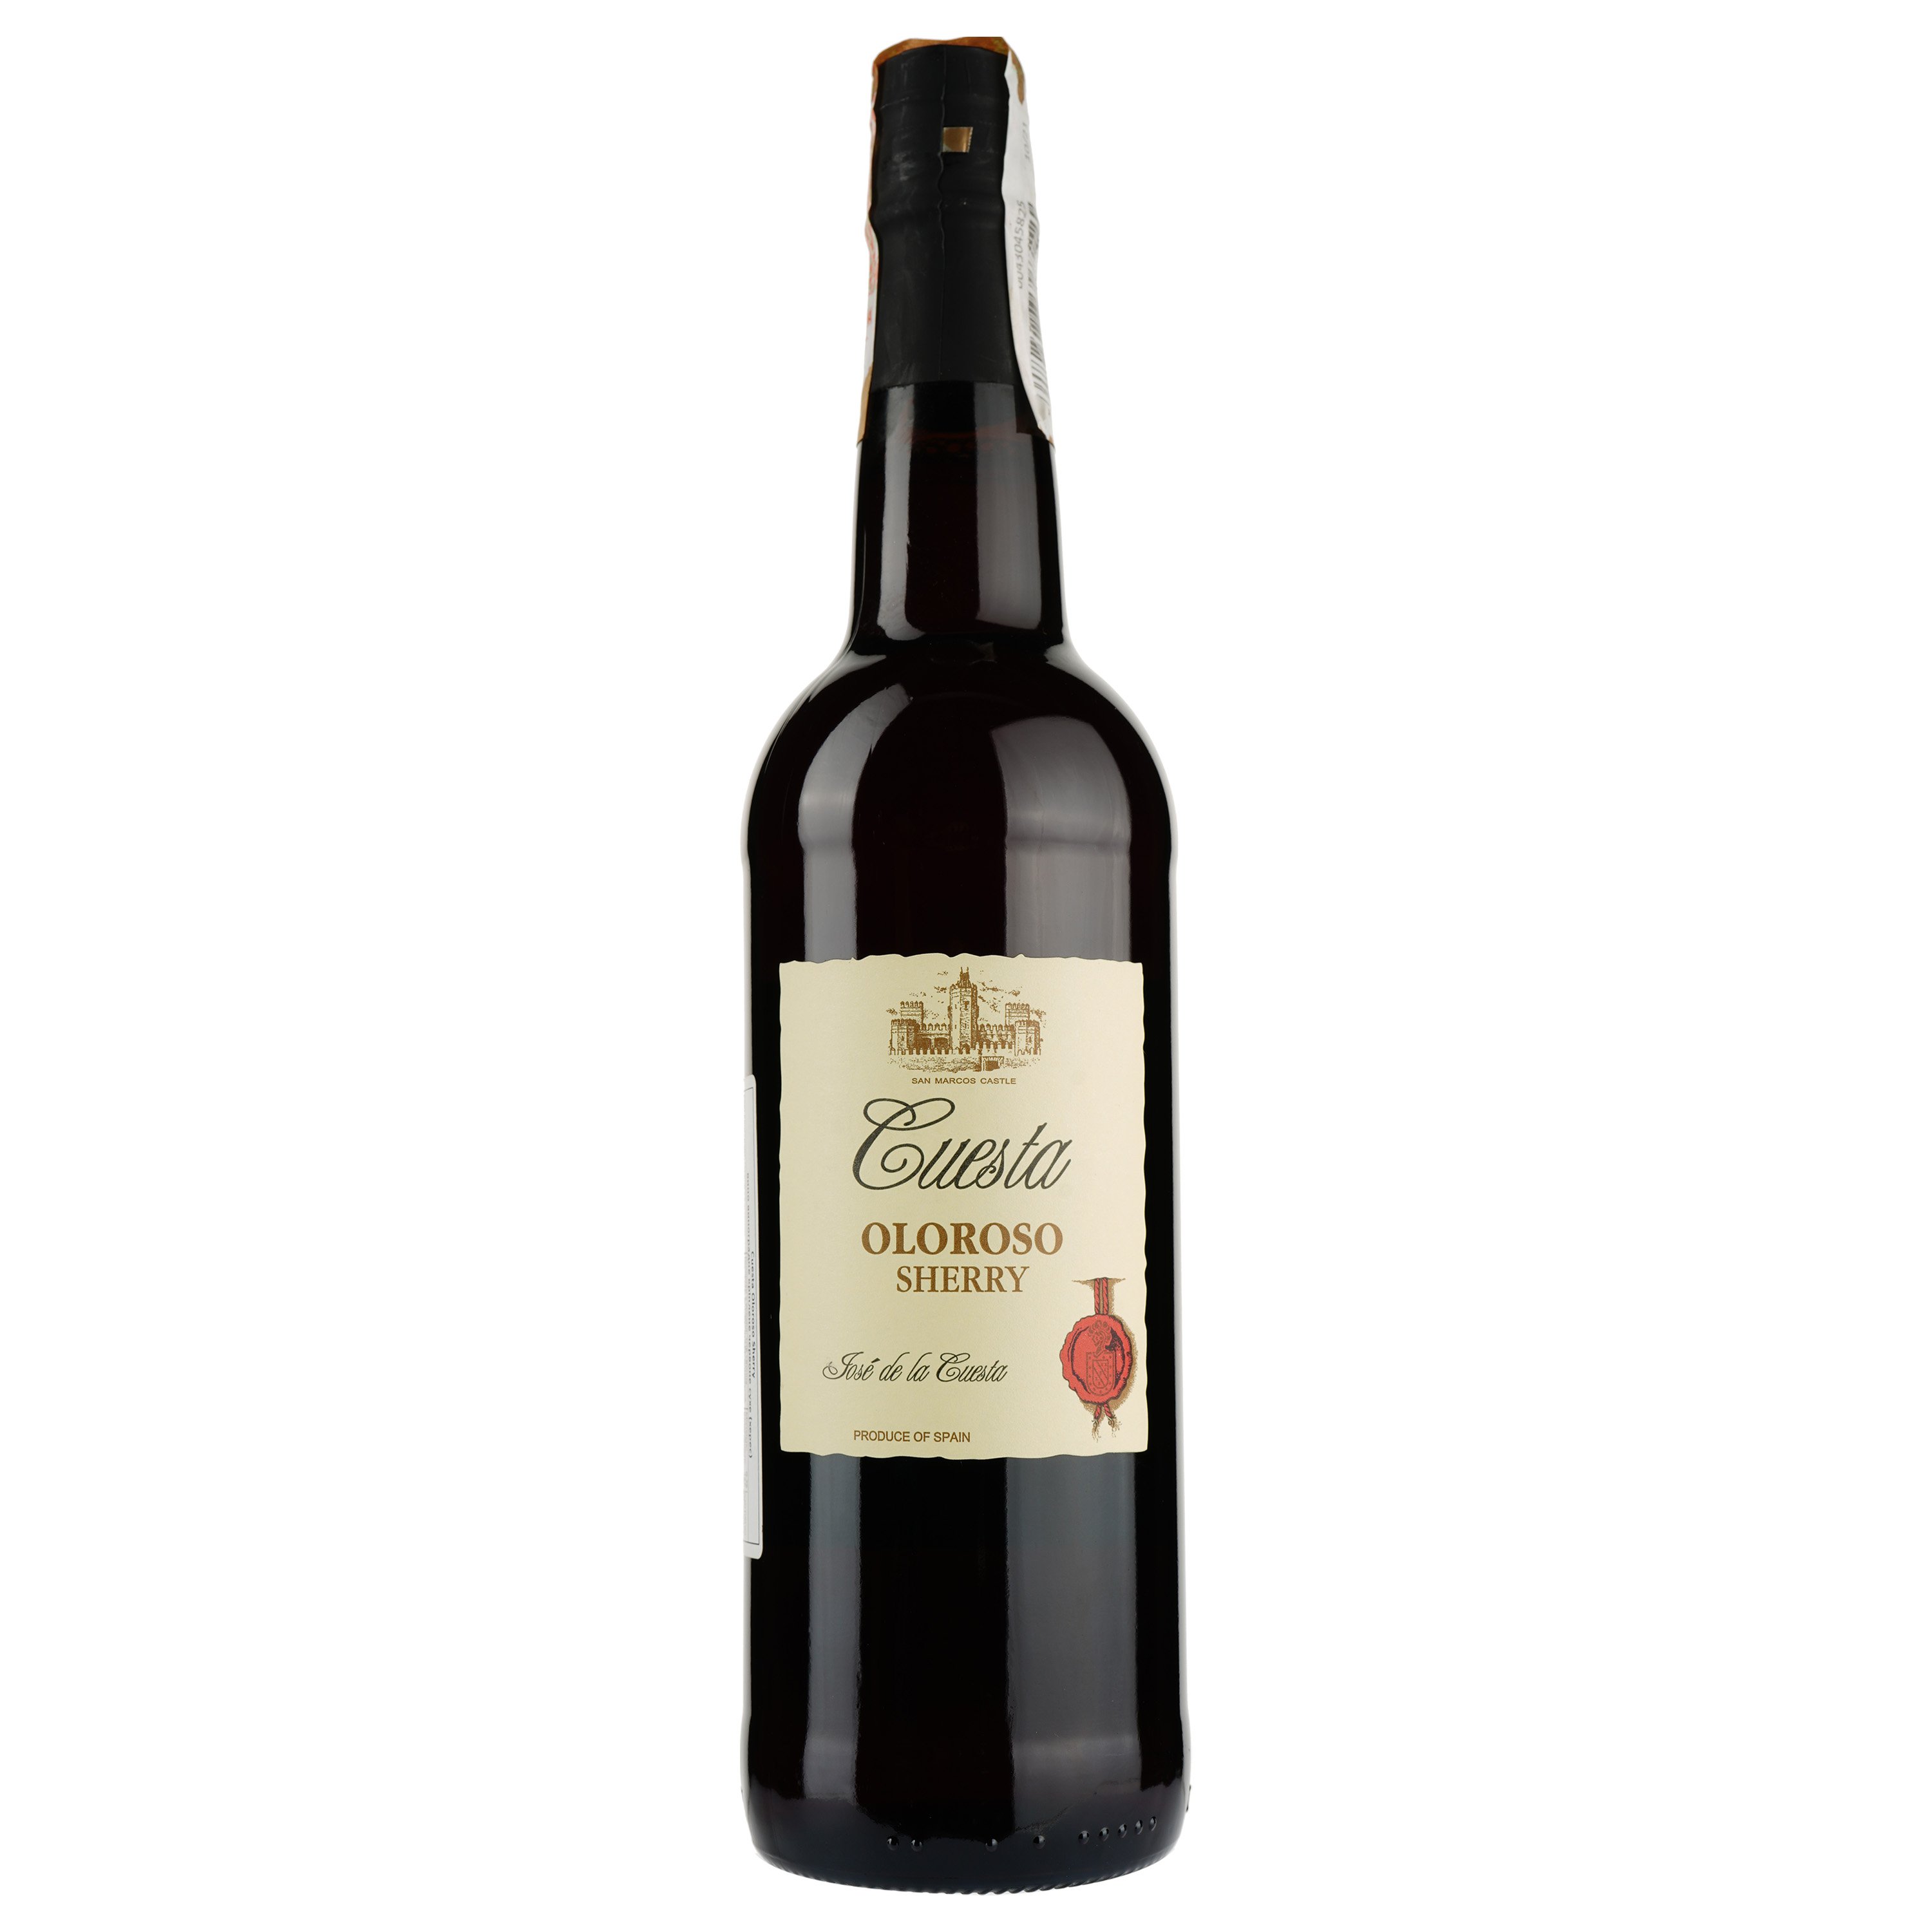 Вино Luis Caballero Cuesta Oloroso Sherry, червоне, сухе, 0,75 л - фото 1